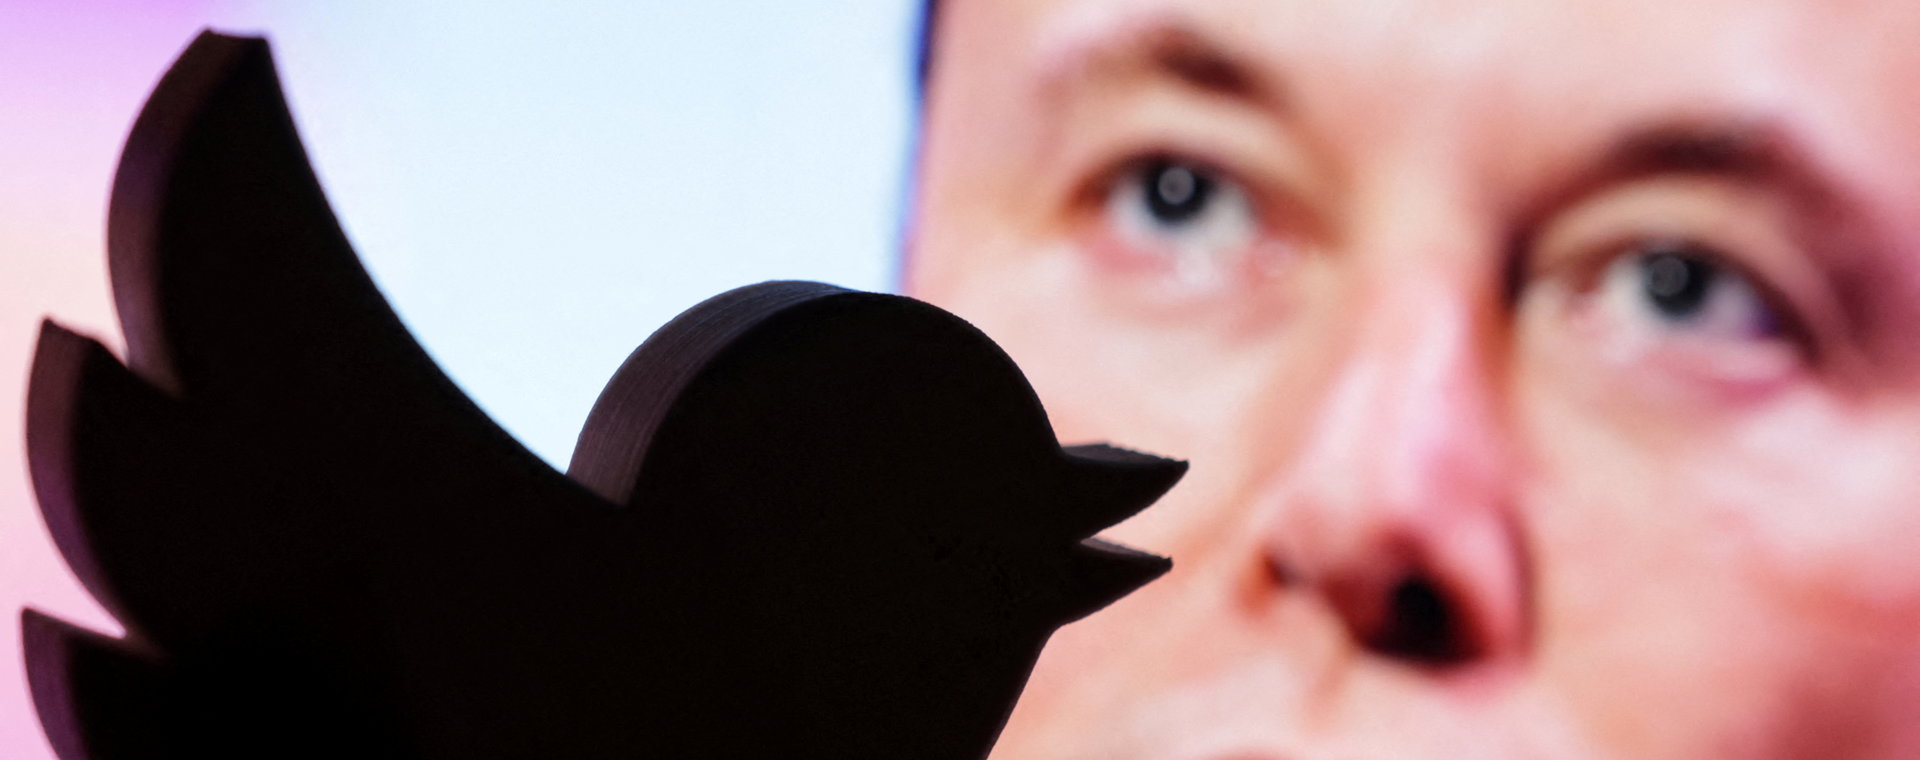 Ponad połowa zespołu Twittera odeszła. Nie chce pracować według standardów narzucanych przez Elona Muska.